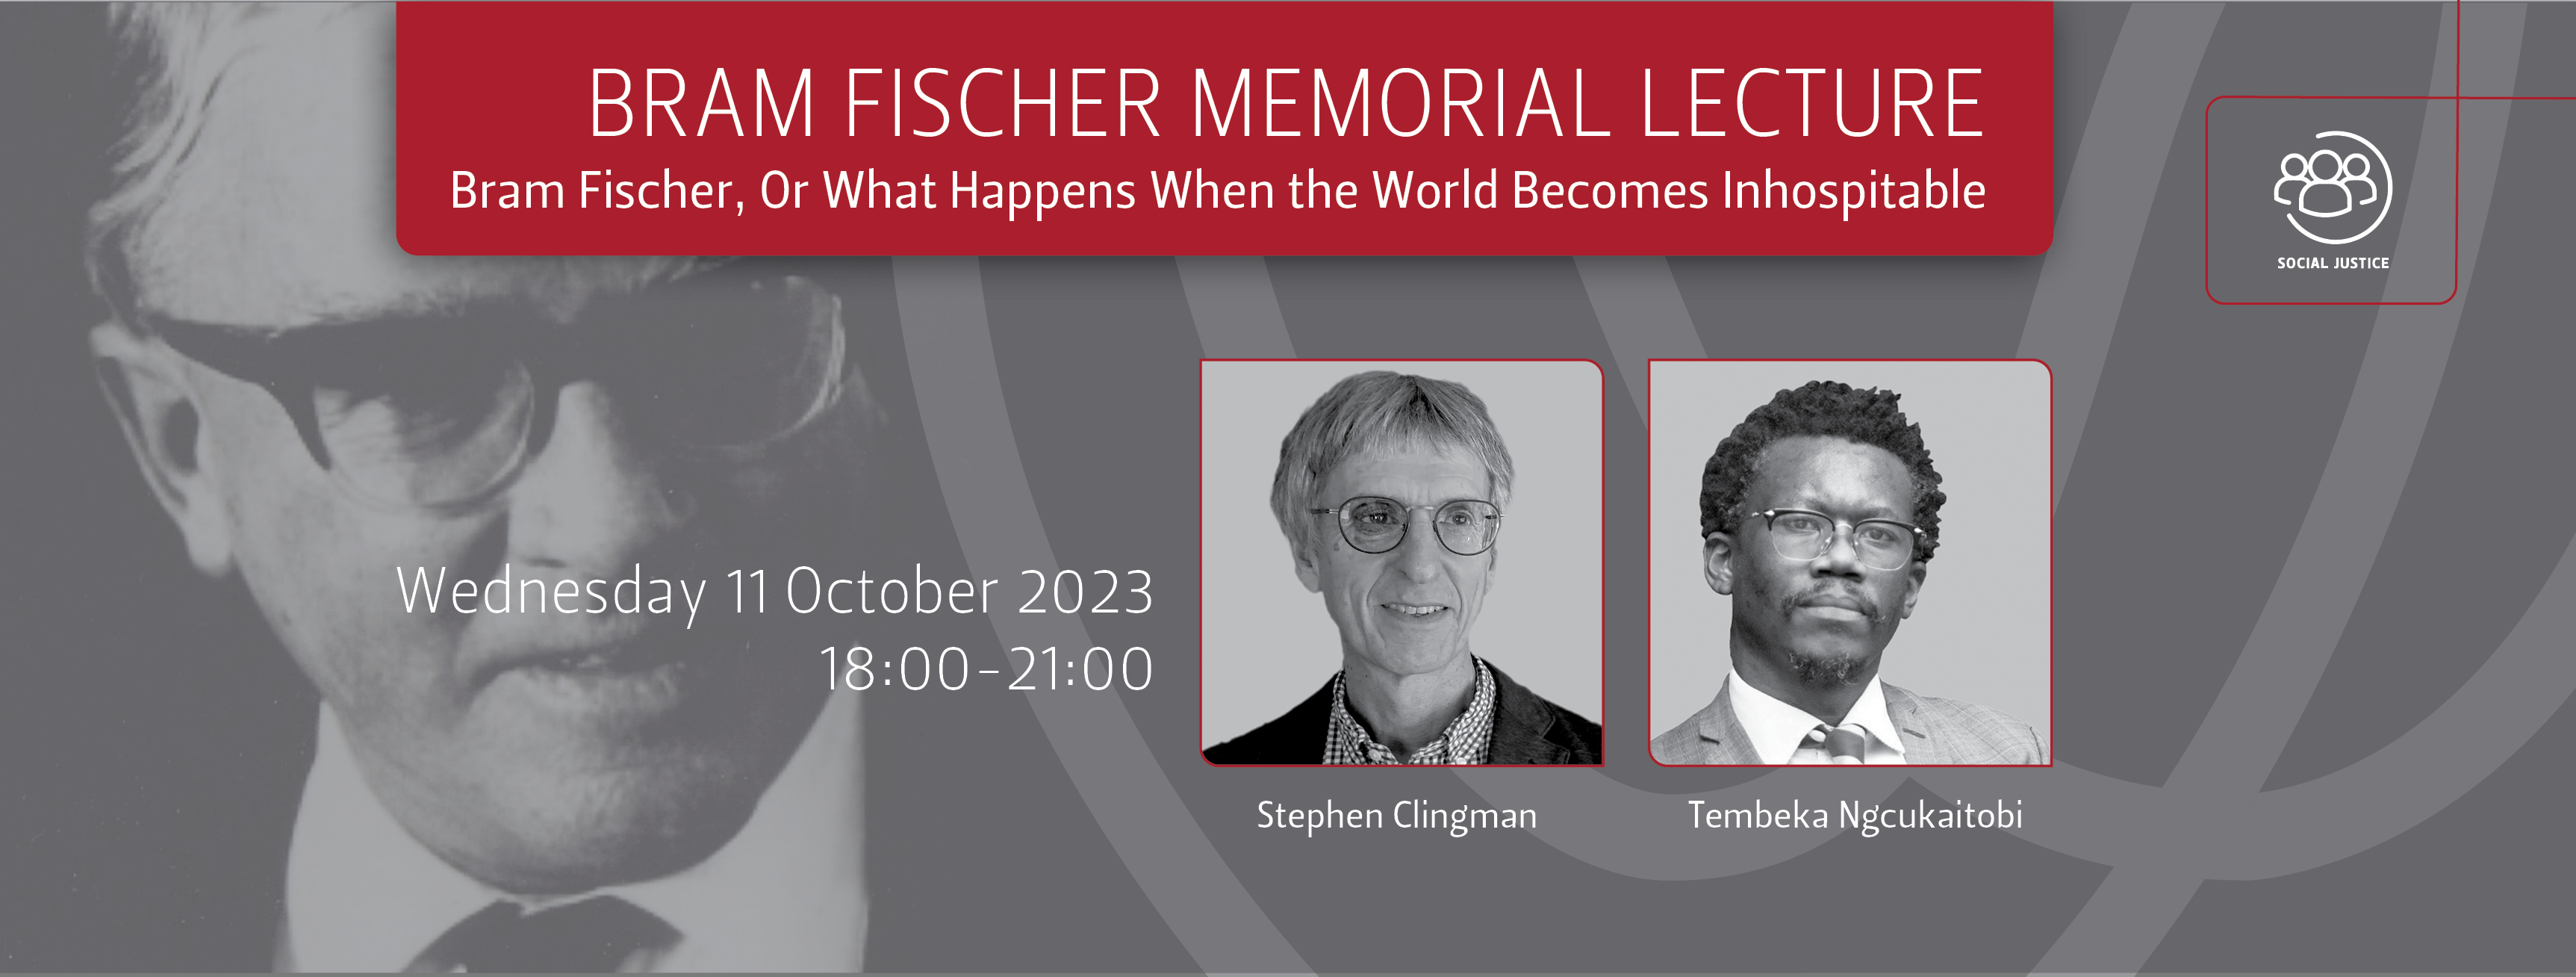 Bram Fischer memorial lecture